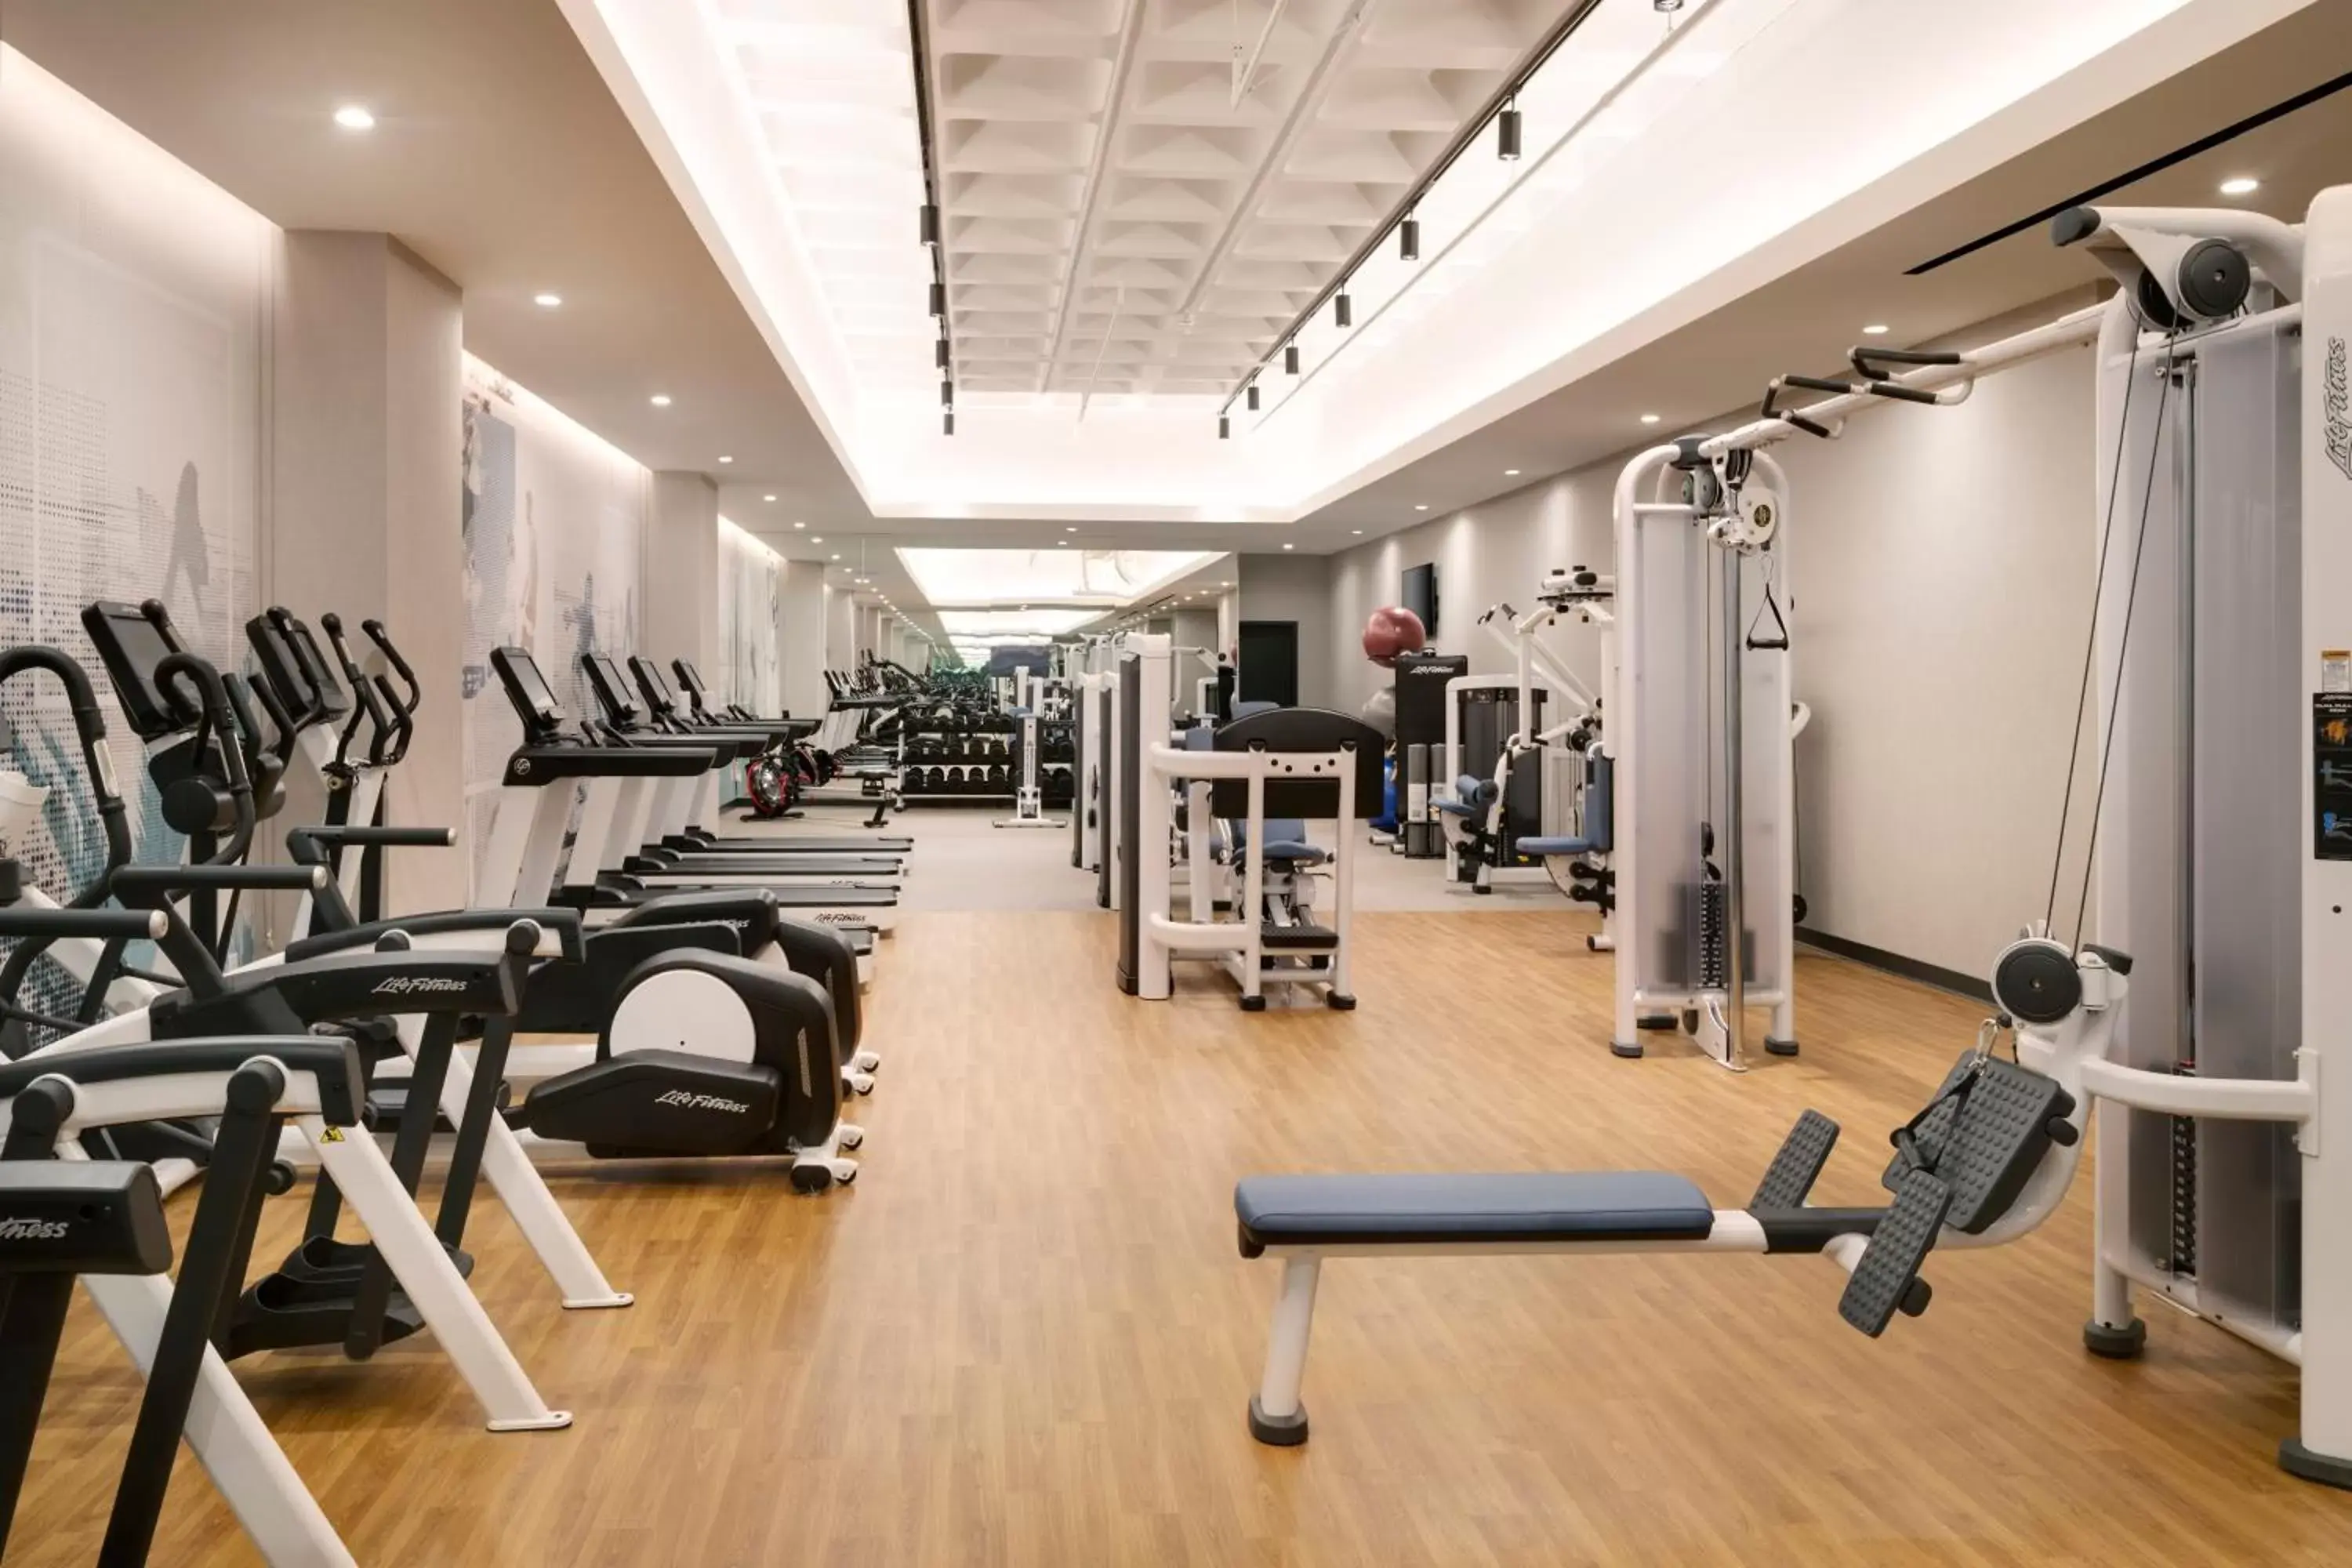 Fitness centre/facilities, Fitness Center/Facilities in Hyatt Place LAX/Century BLVD